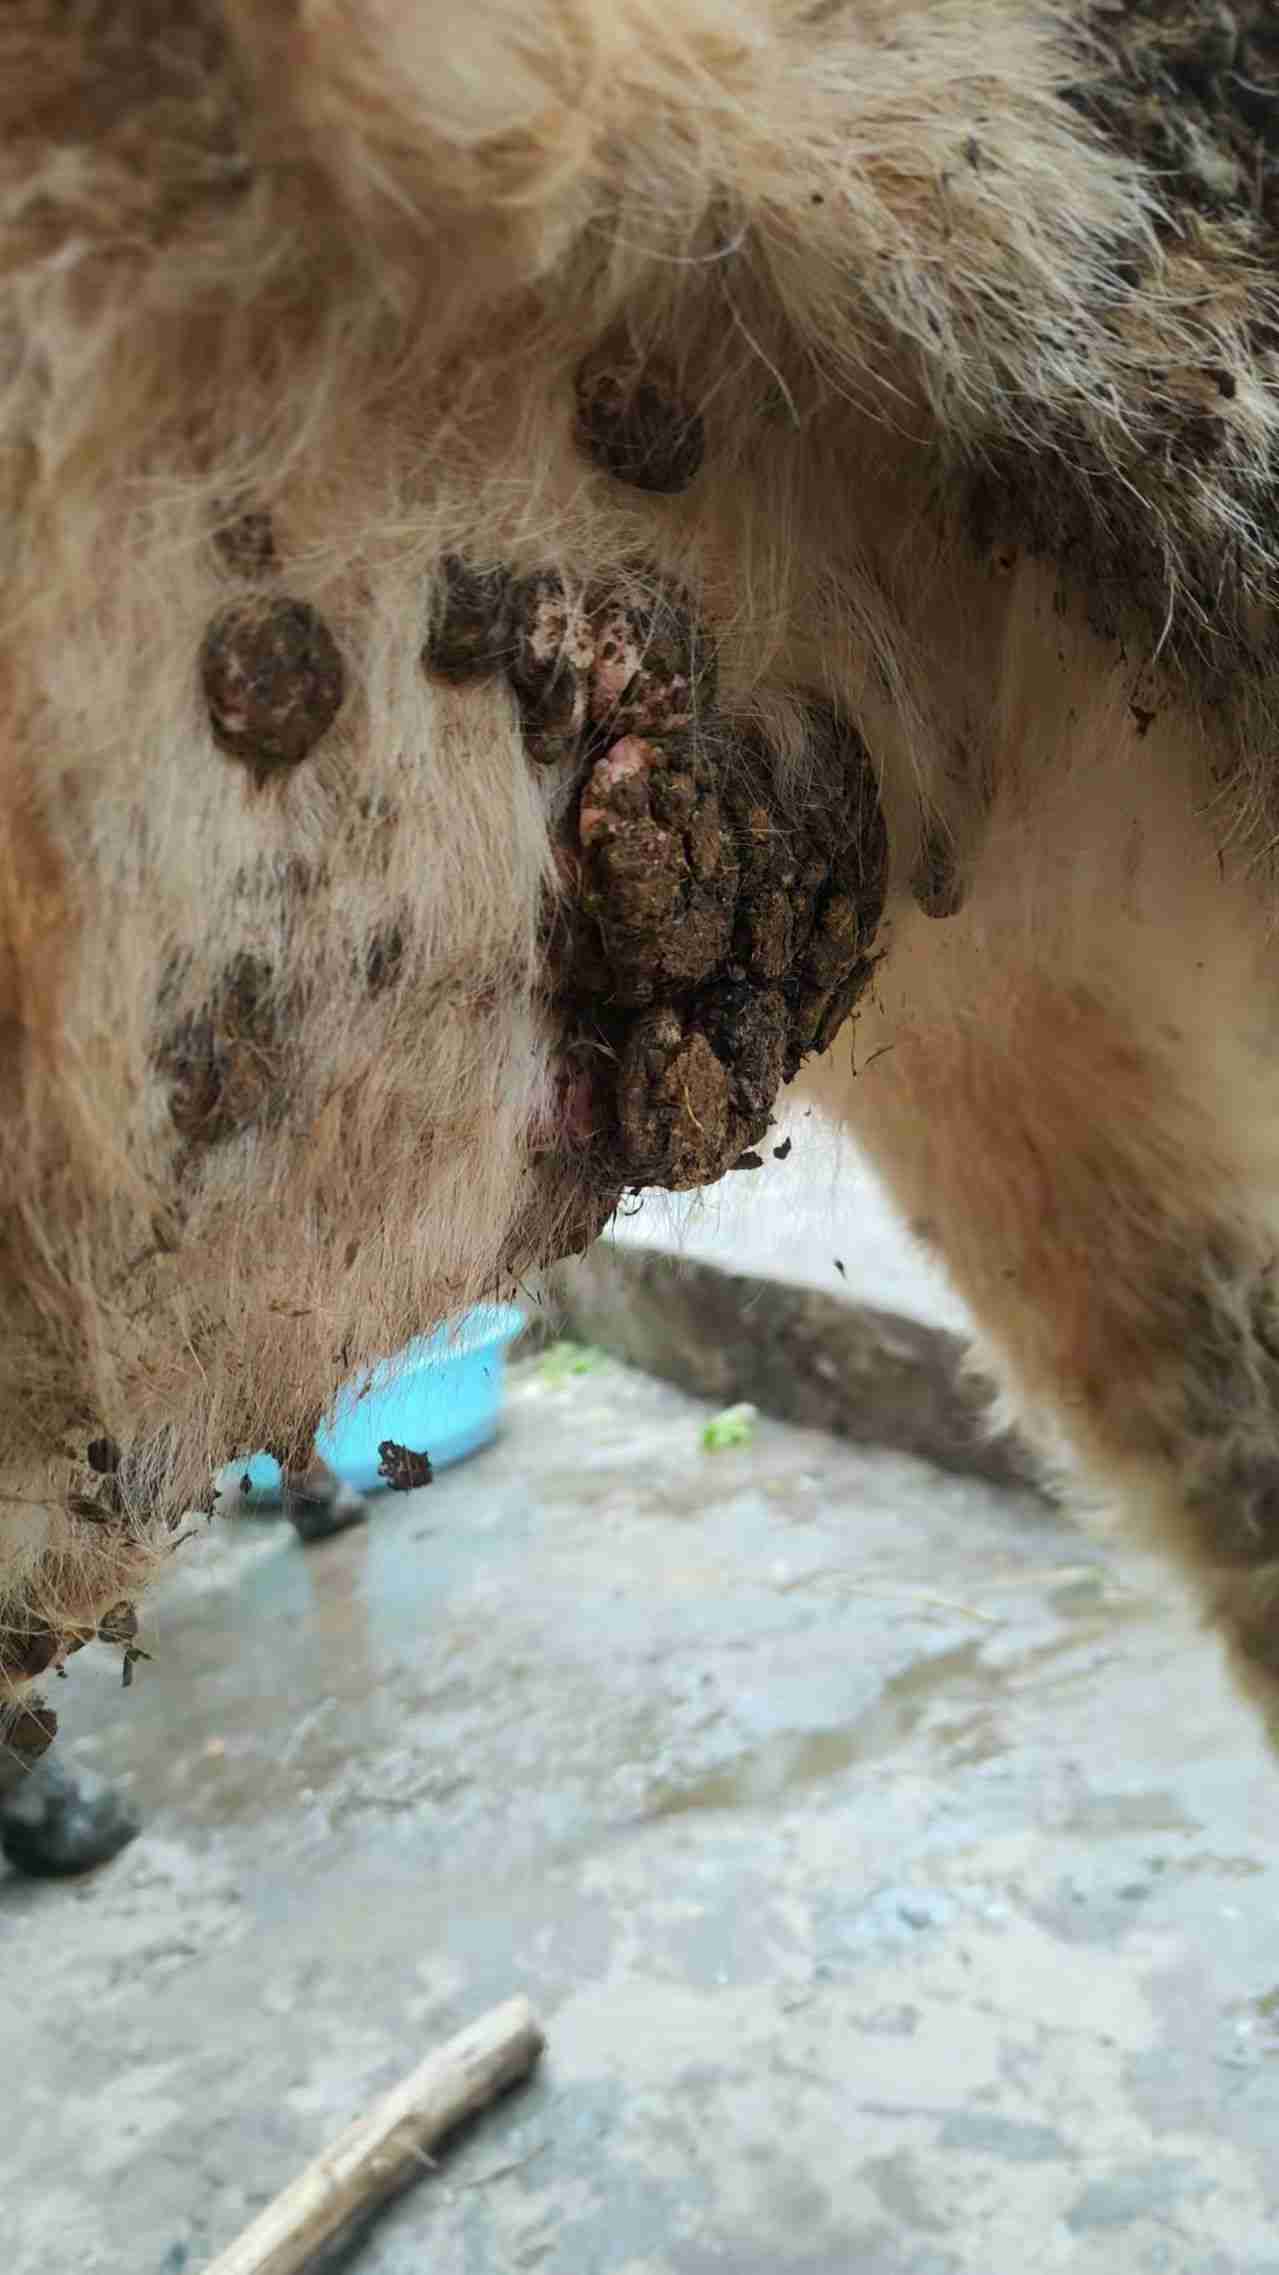 养殖牛常见的皮肤病图片